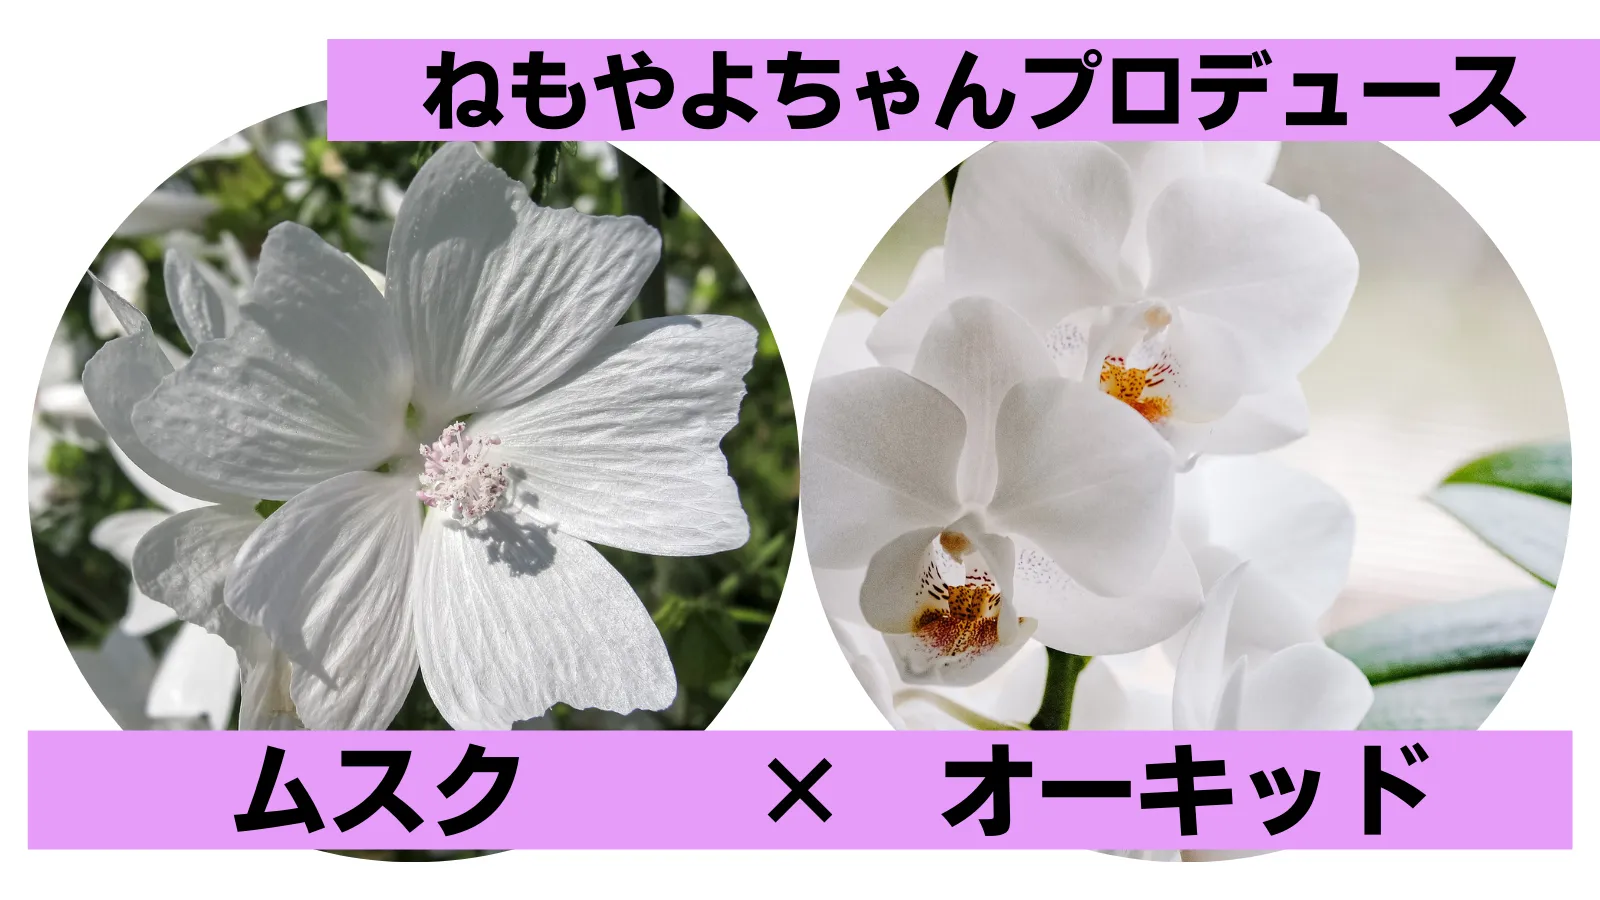 6位【マーメイドパール】ねもやよちゃんプロデュース「お花の香水みたいな香り」